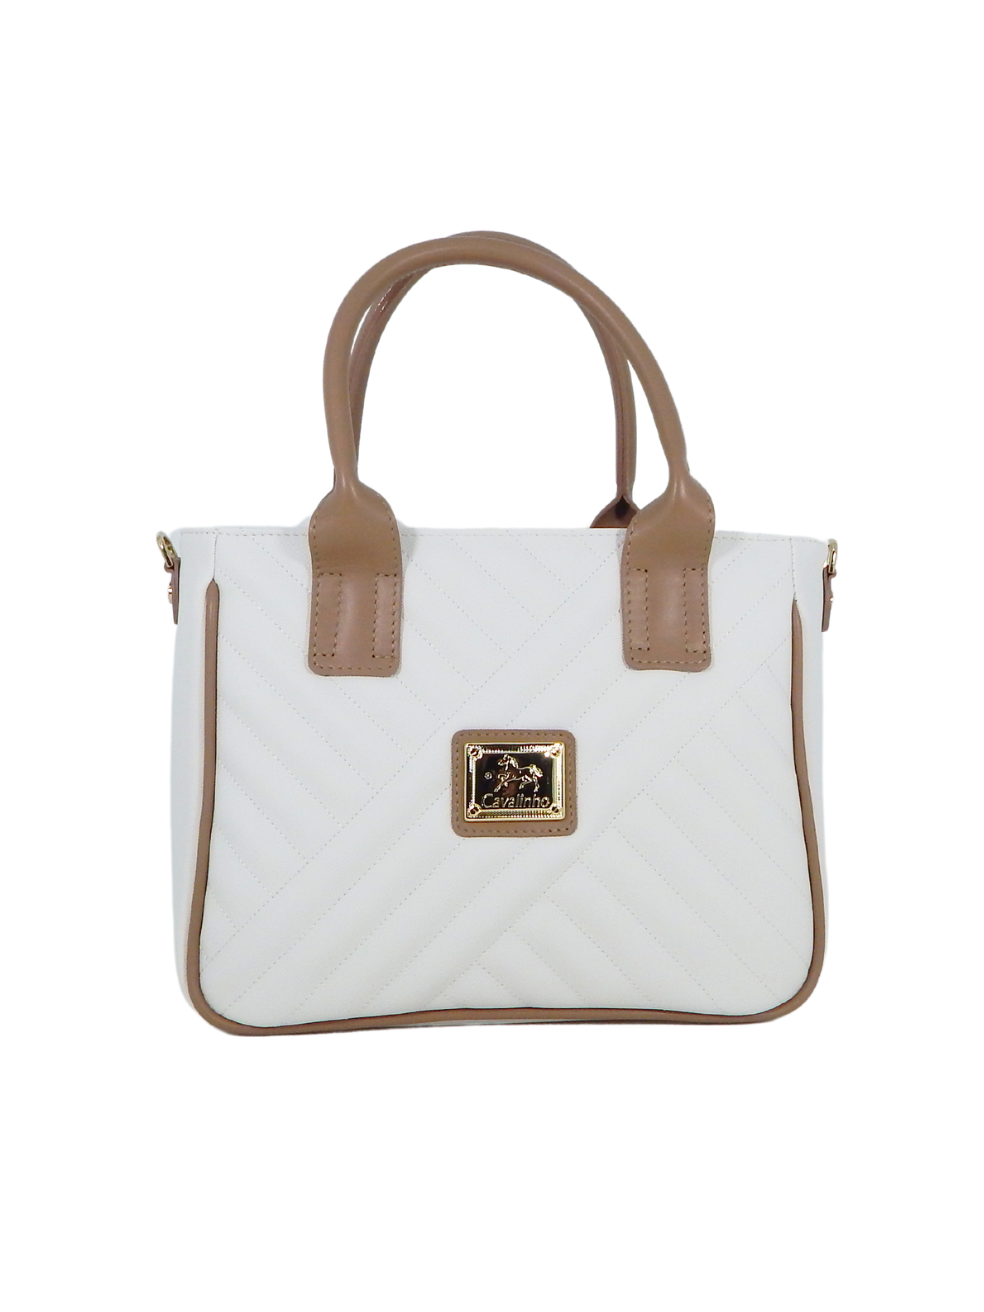 Cavalinho Charming Handbag SKU 18470507.38 #color_white / sand